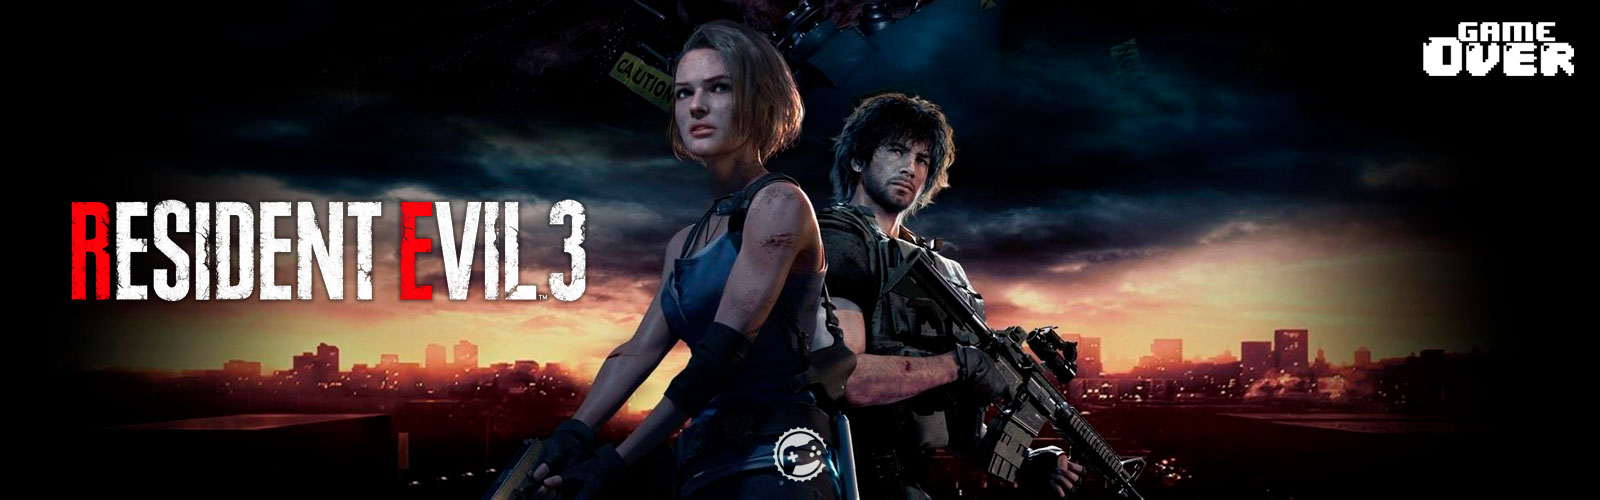 Análise - Resident Evil 3 Cover